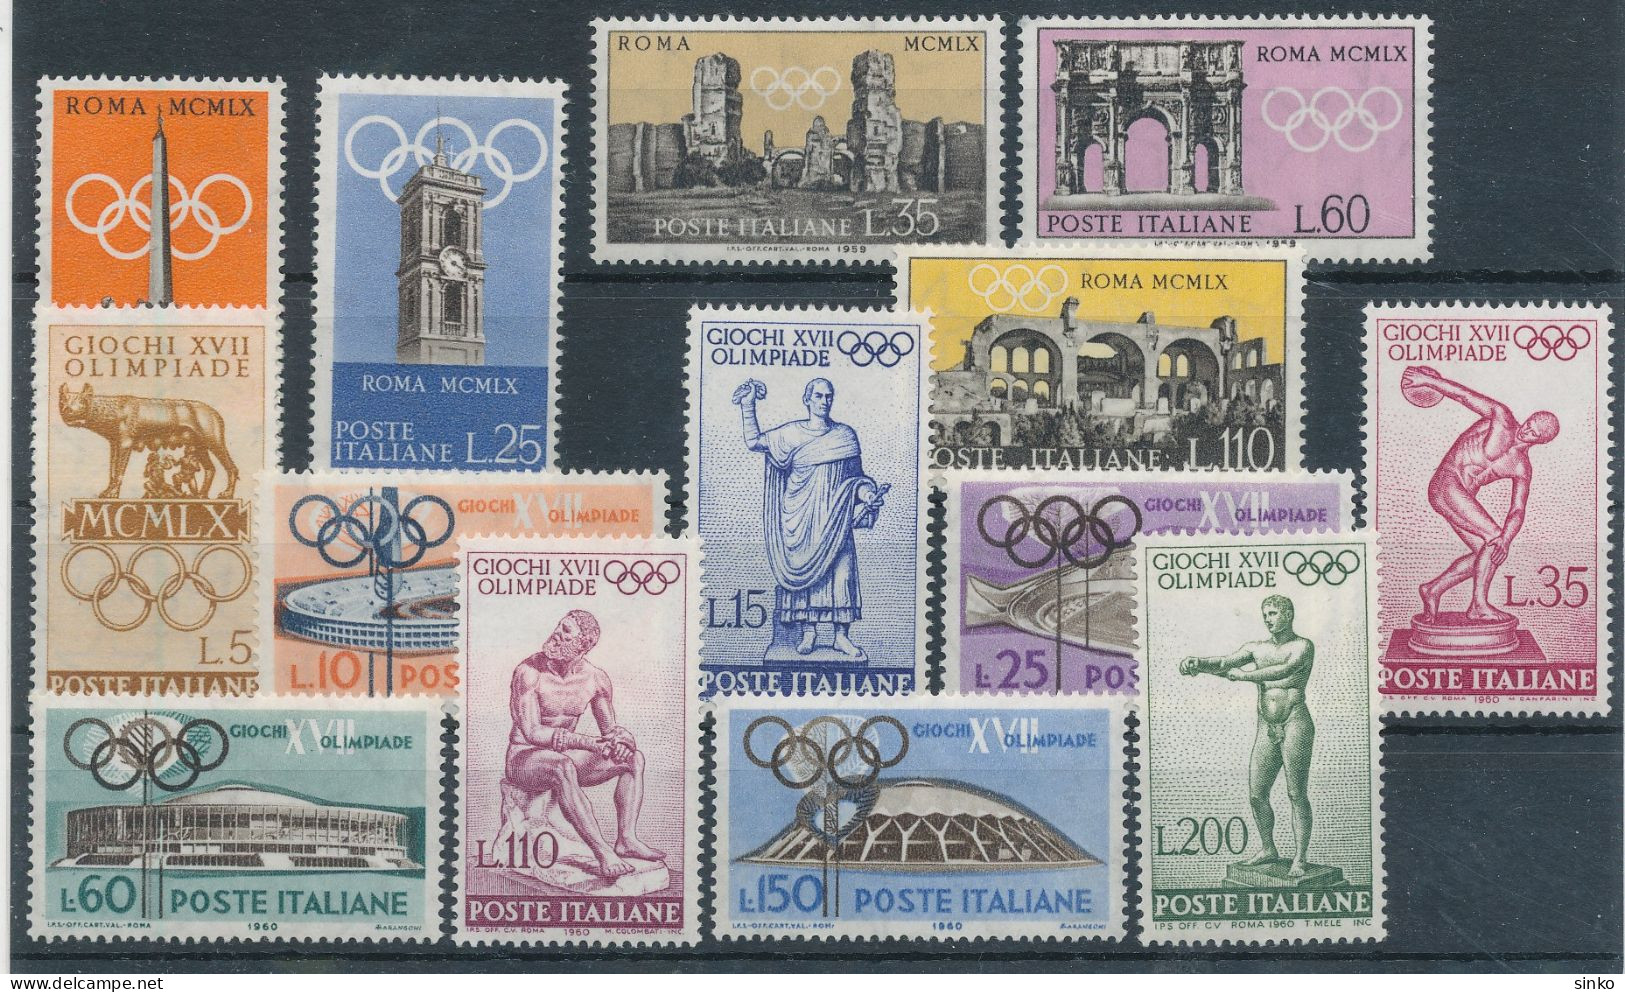 1959/60. Italy - Olympics - Summer 1960: Rome